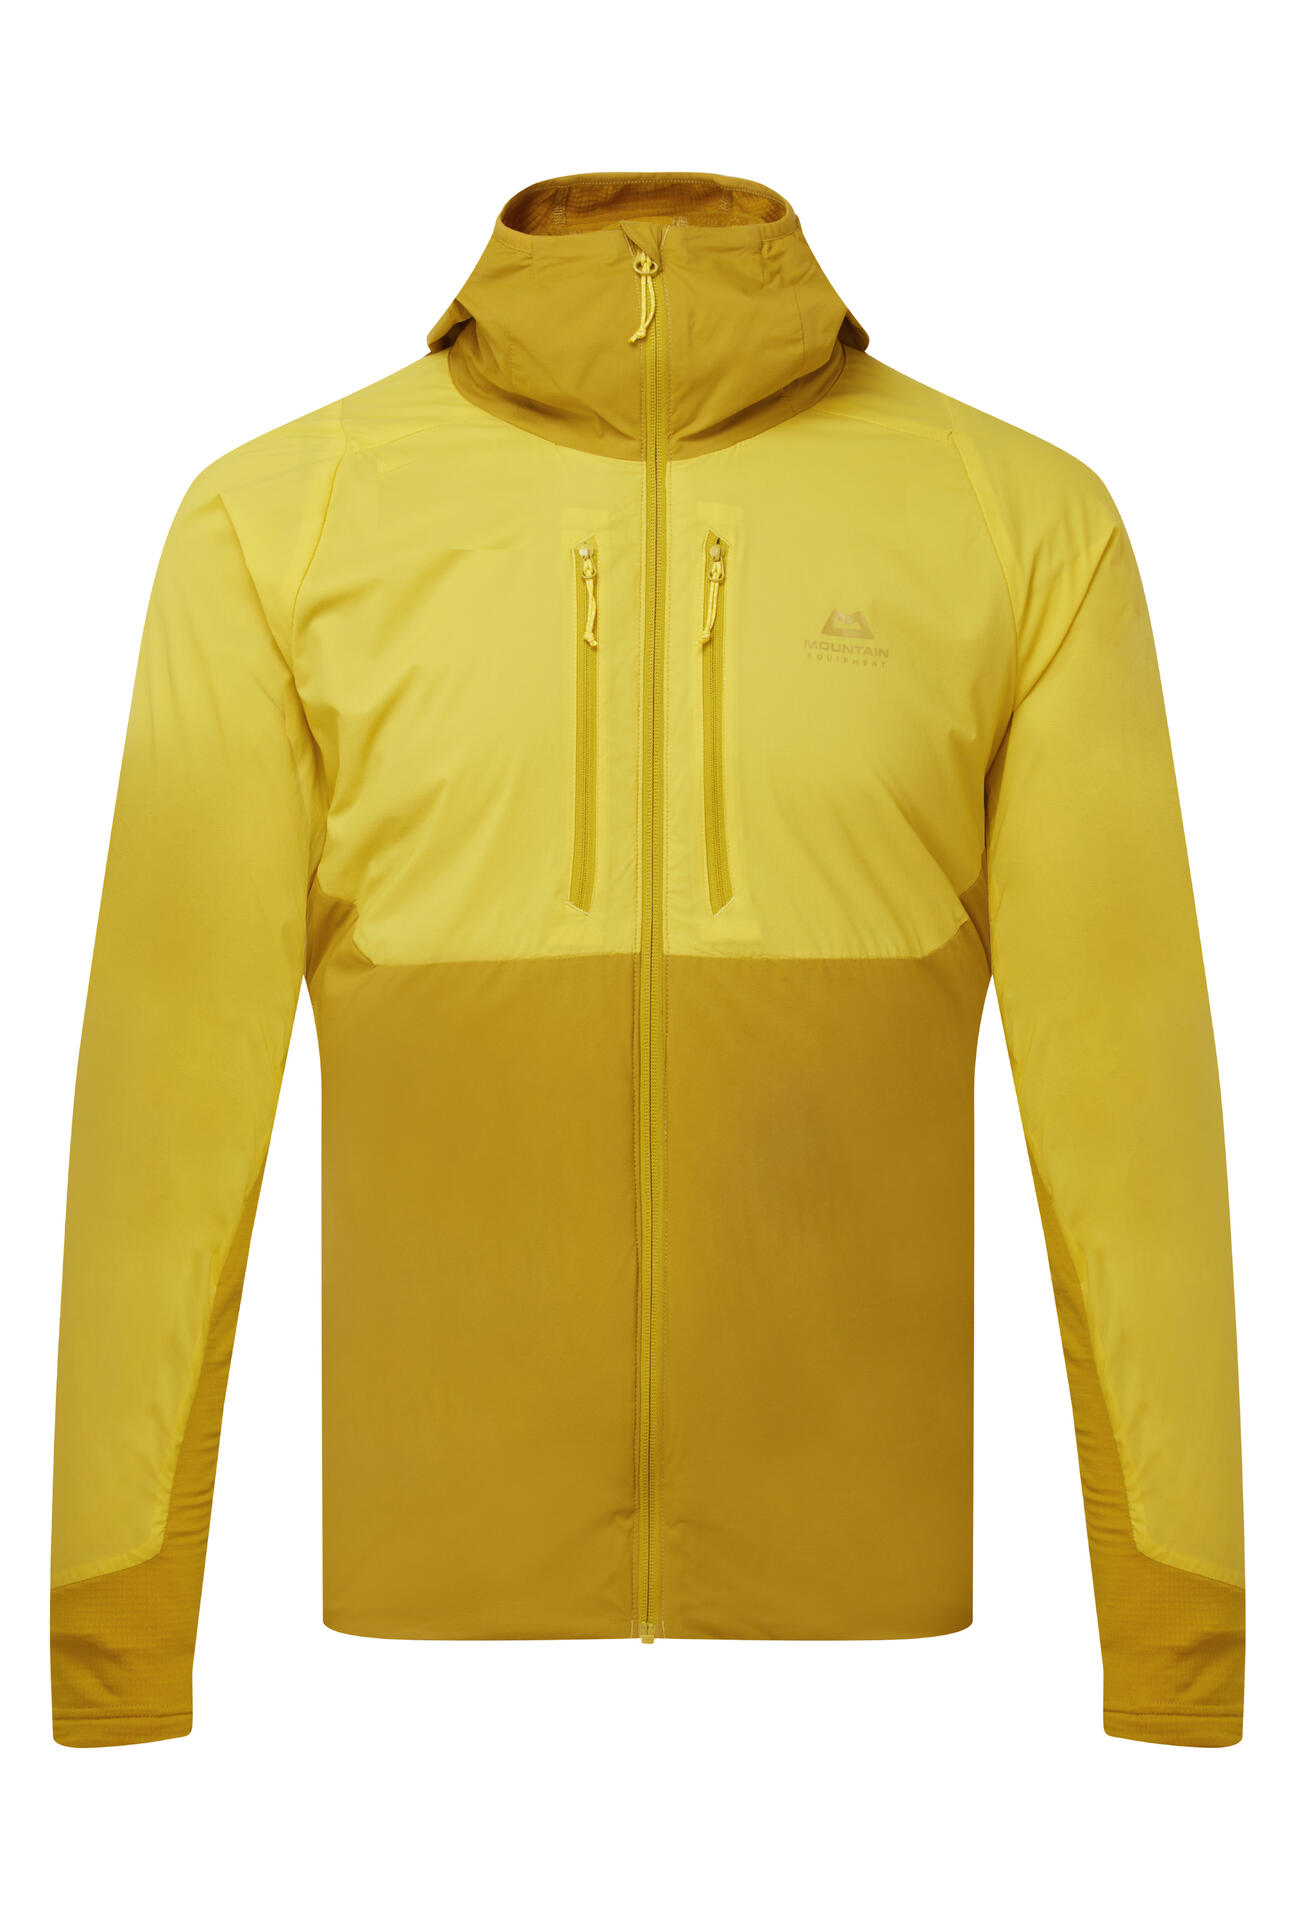 Mountain Equipment Switch Pro Hooded Jacket Men'S Barva: Lemon/Acid, Velikost: S